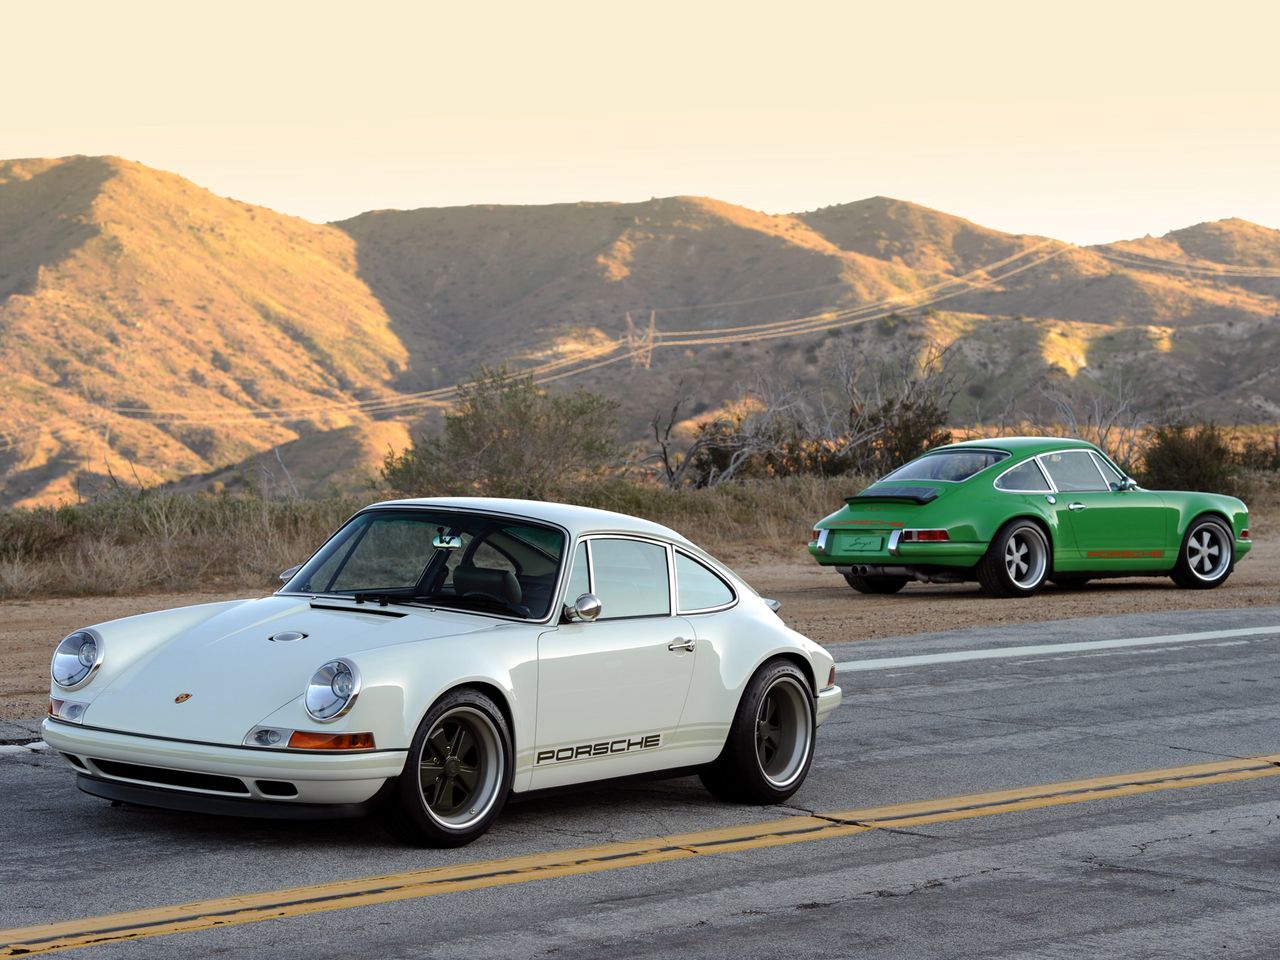 Singer Porsche 911 - król współczesnych klasyków